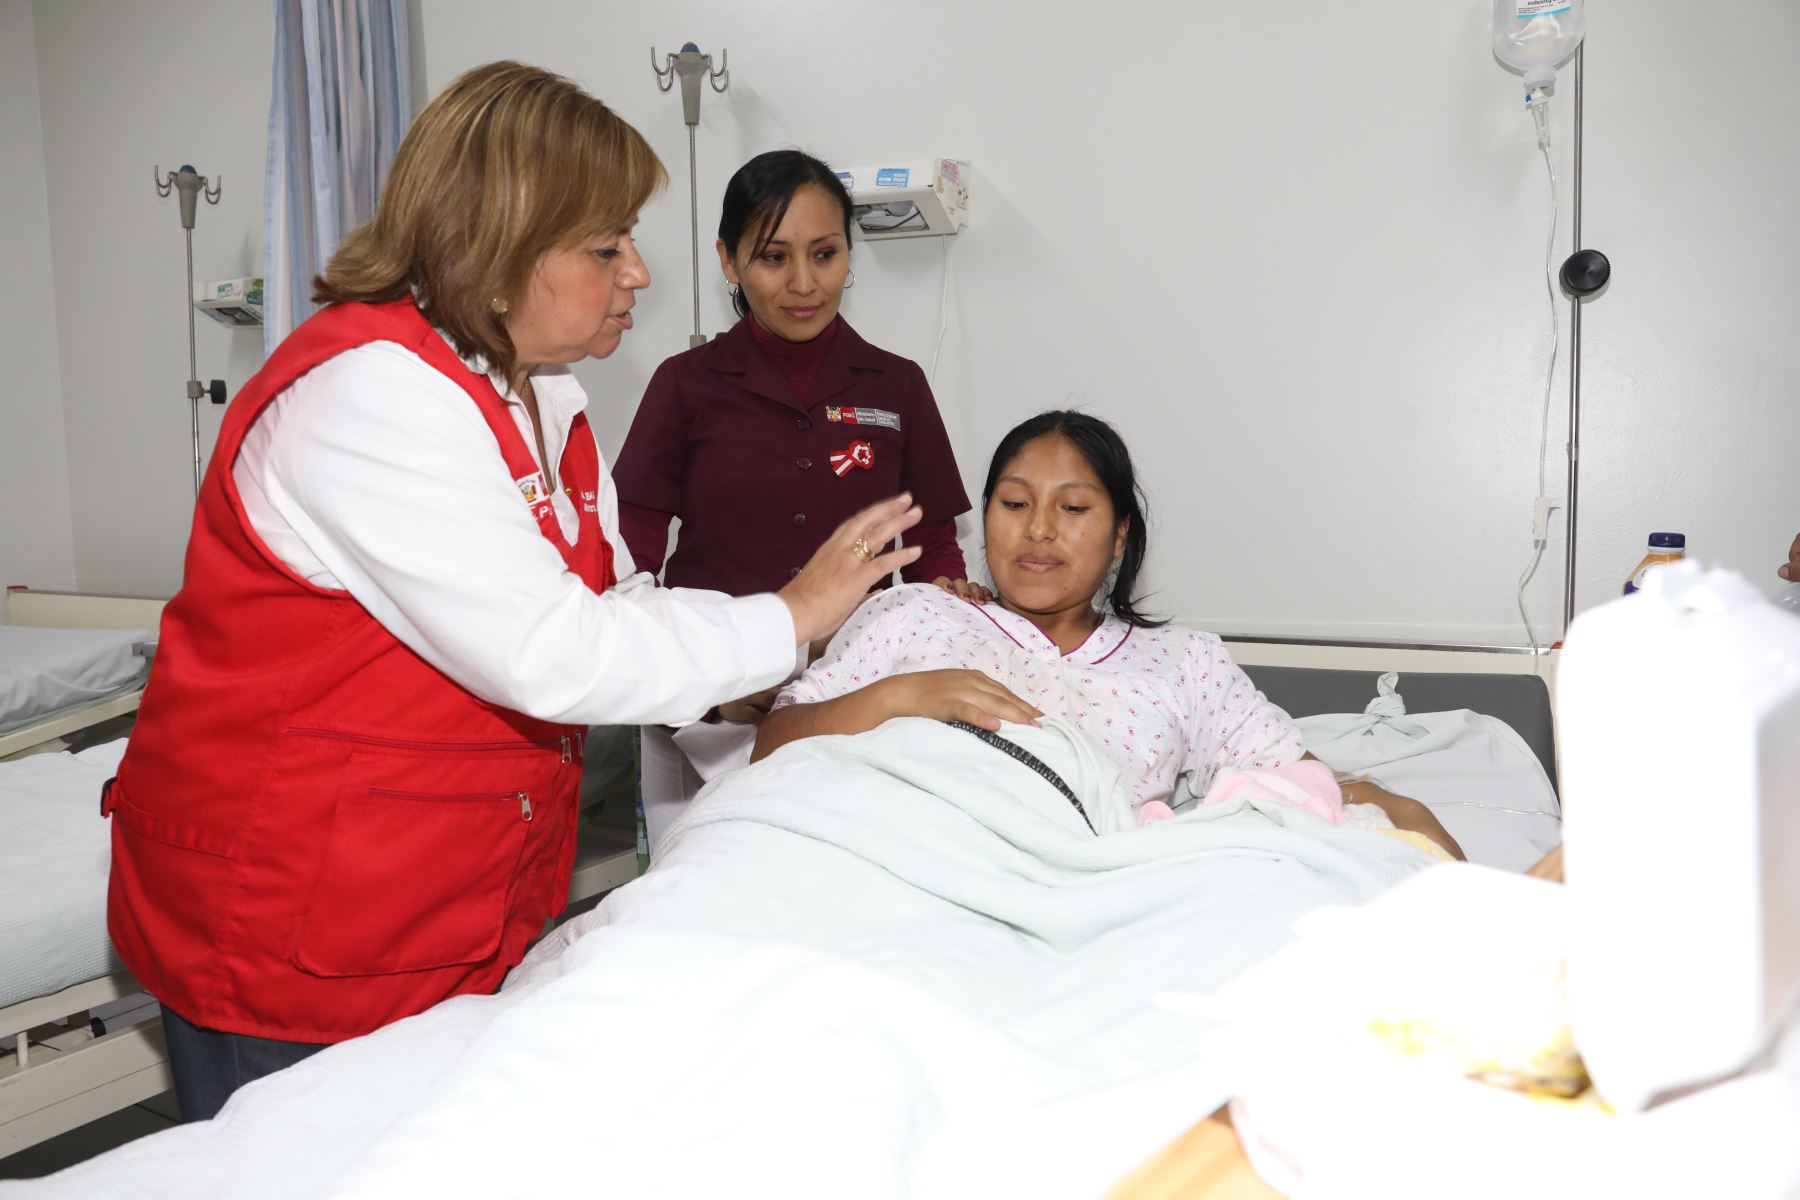 Ministra de Salud Zulema Tomás inauguró el Centro Materno Infantil (CMI) Santa Anita y anuncio la nueva infraestructura, equipamiento y amplió el servicio de 227 centros y puestos de salud en Lima Metropolitana con una inversión de casi 28 millones de soles.Foto.ANDINA/MINSA